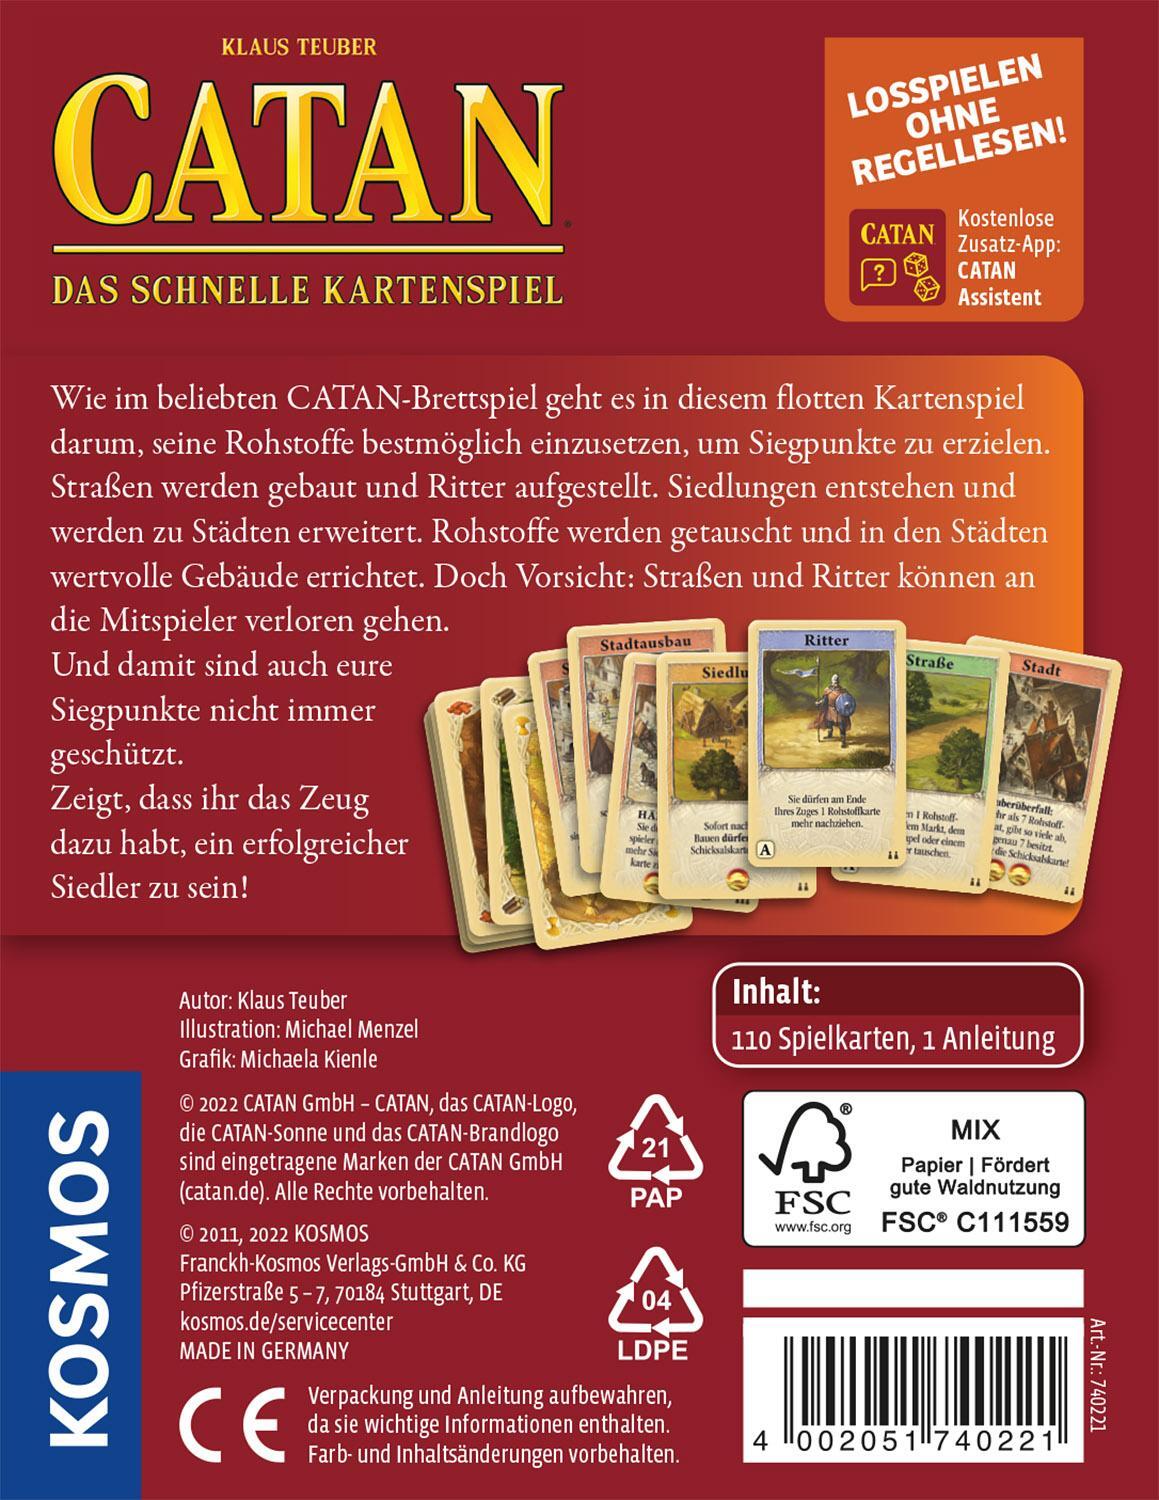 Rückseite: 4002051740221 | Die Siedler von Catan - Das schnelle Kartenspiel | Klaus Teuber | 2011